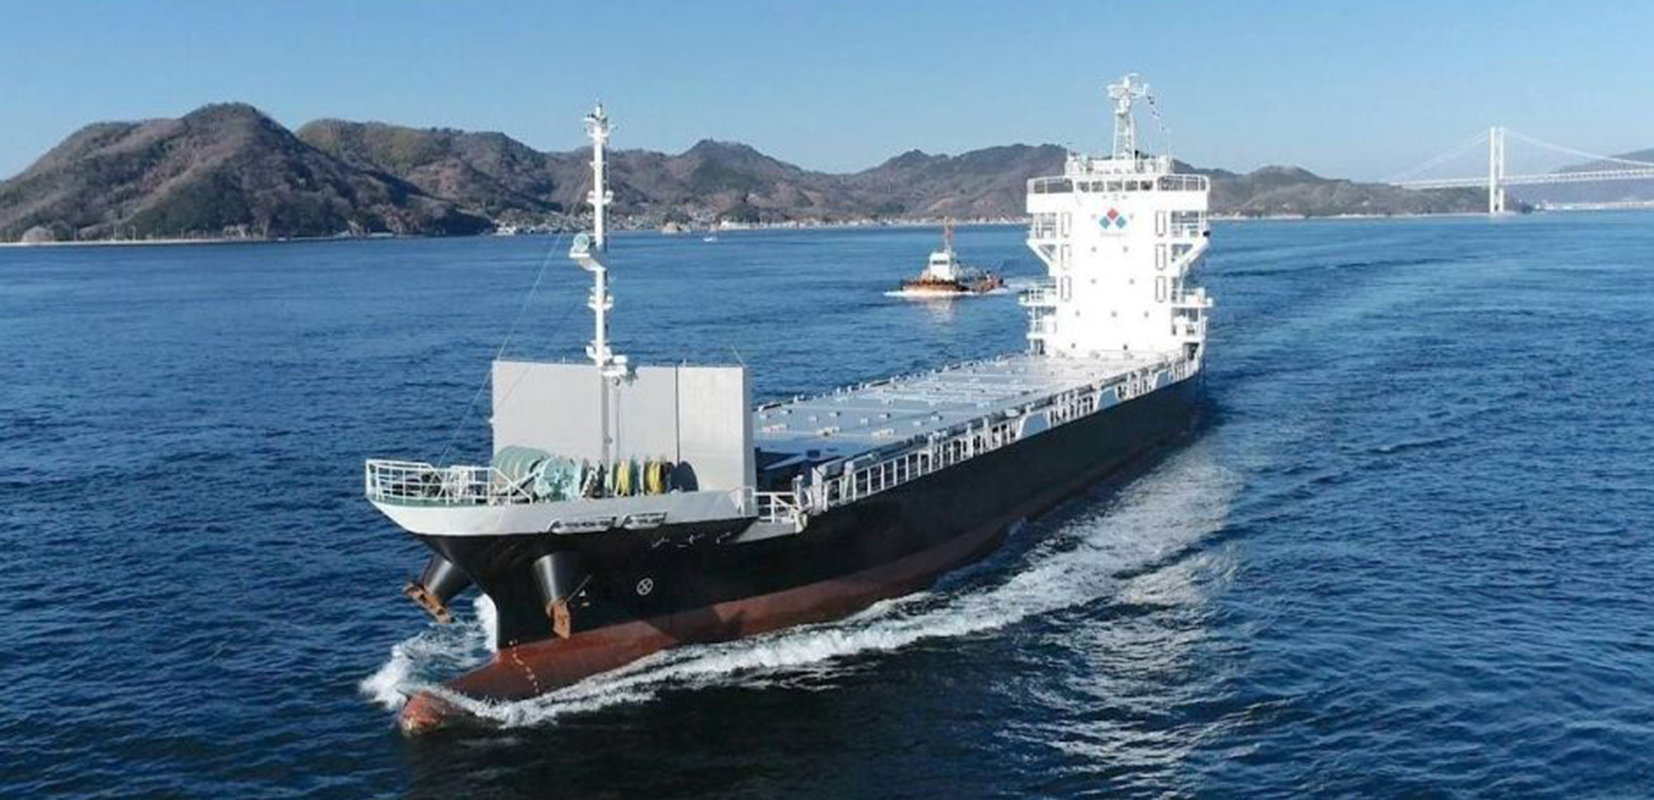 BUQUE AUTÓNOMO Este es el caso del Suzaku, el carguero de la compañía israelí Orca AI